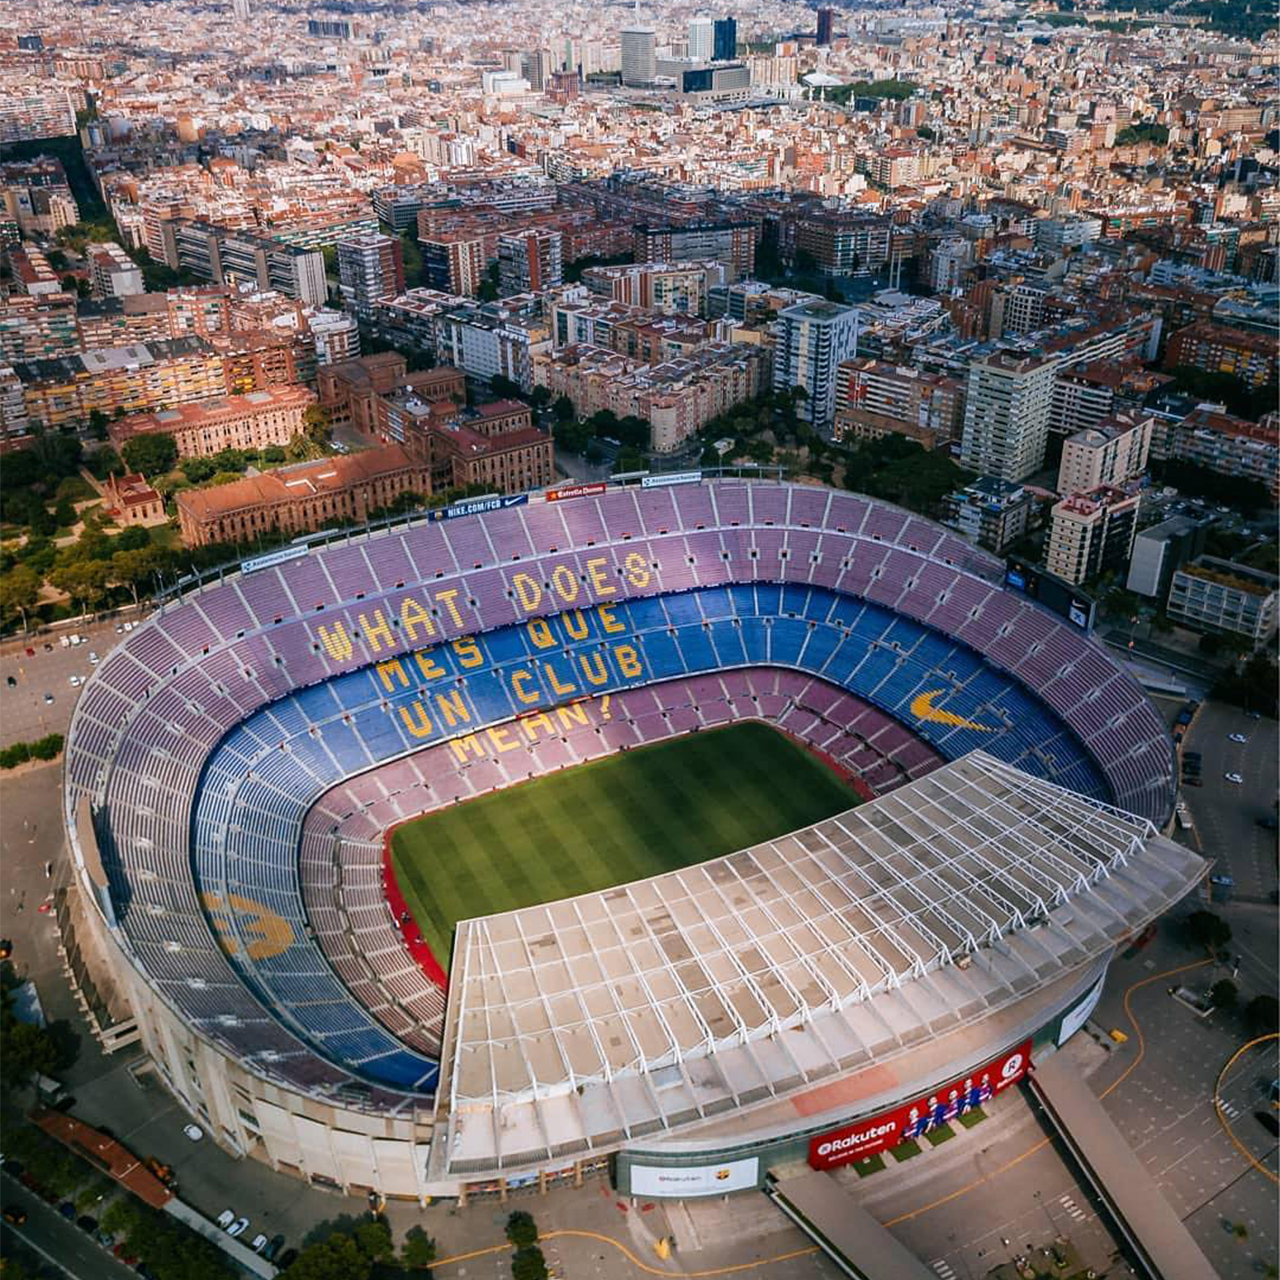 Стадионы футбола вместимость. Камп ноу стадион. Стадион Камп ноу в Барселоне. Стадион Camp nou. Барселона футбольный стадион Камп ноу.